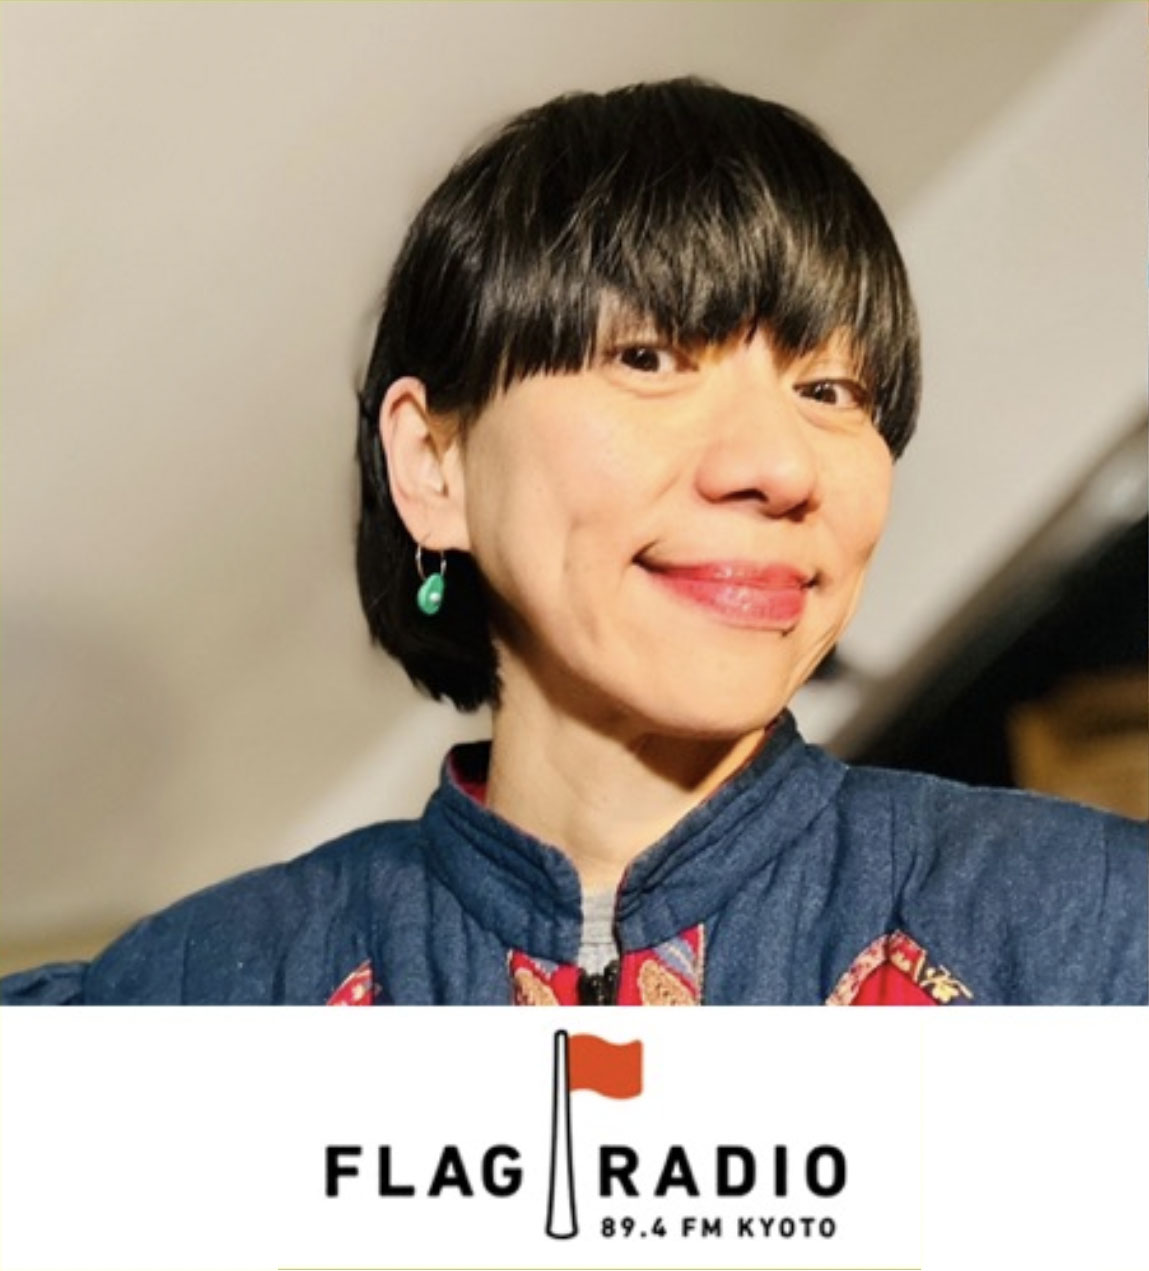 【三島・ラジオ聴き逃し】UAさん「FLAG RADIO」に出演